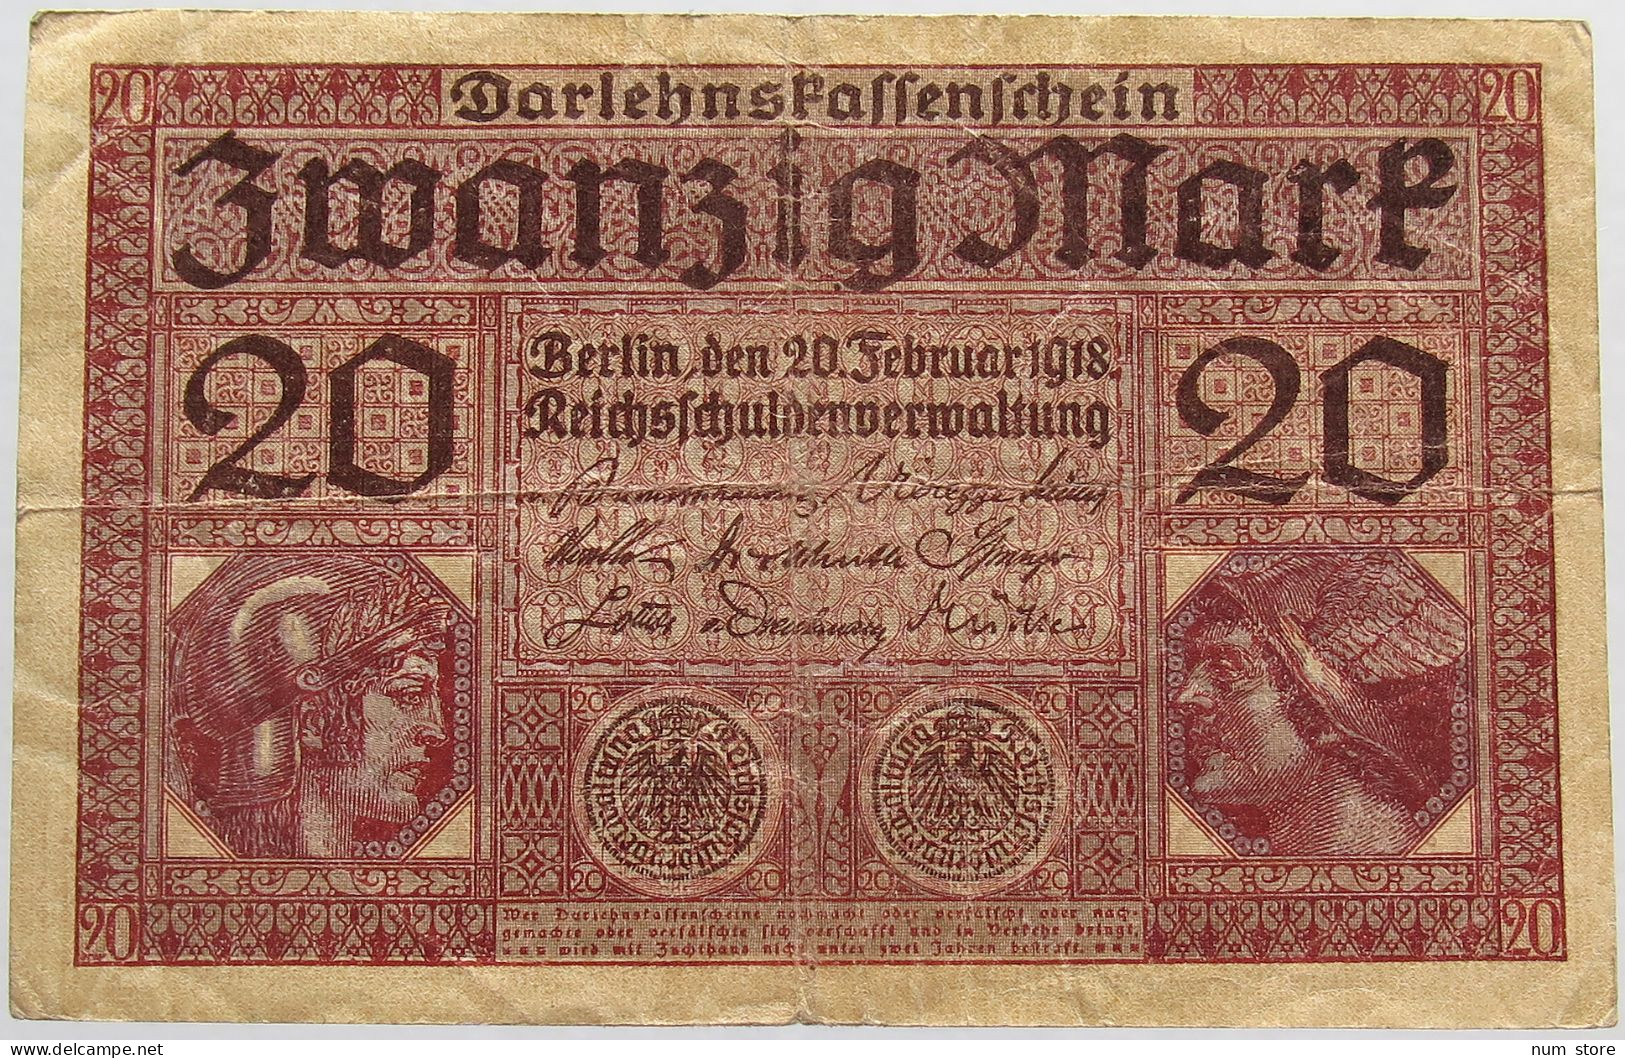 GERMANY 20 MARK 1918 #alb020 0077 - 20 Mark